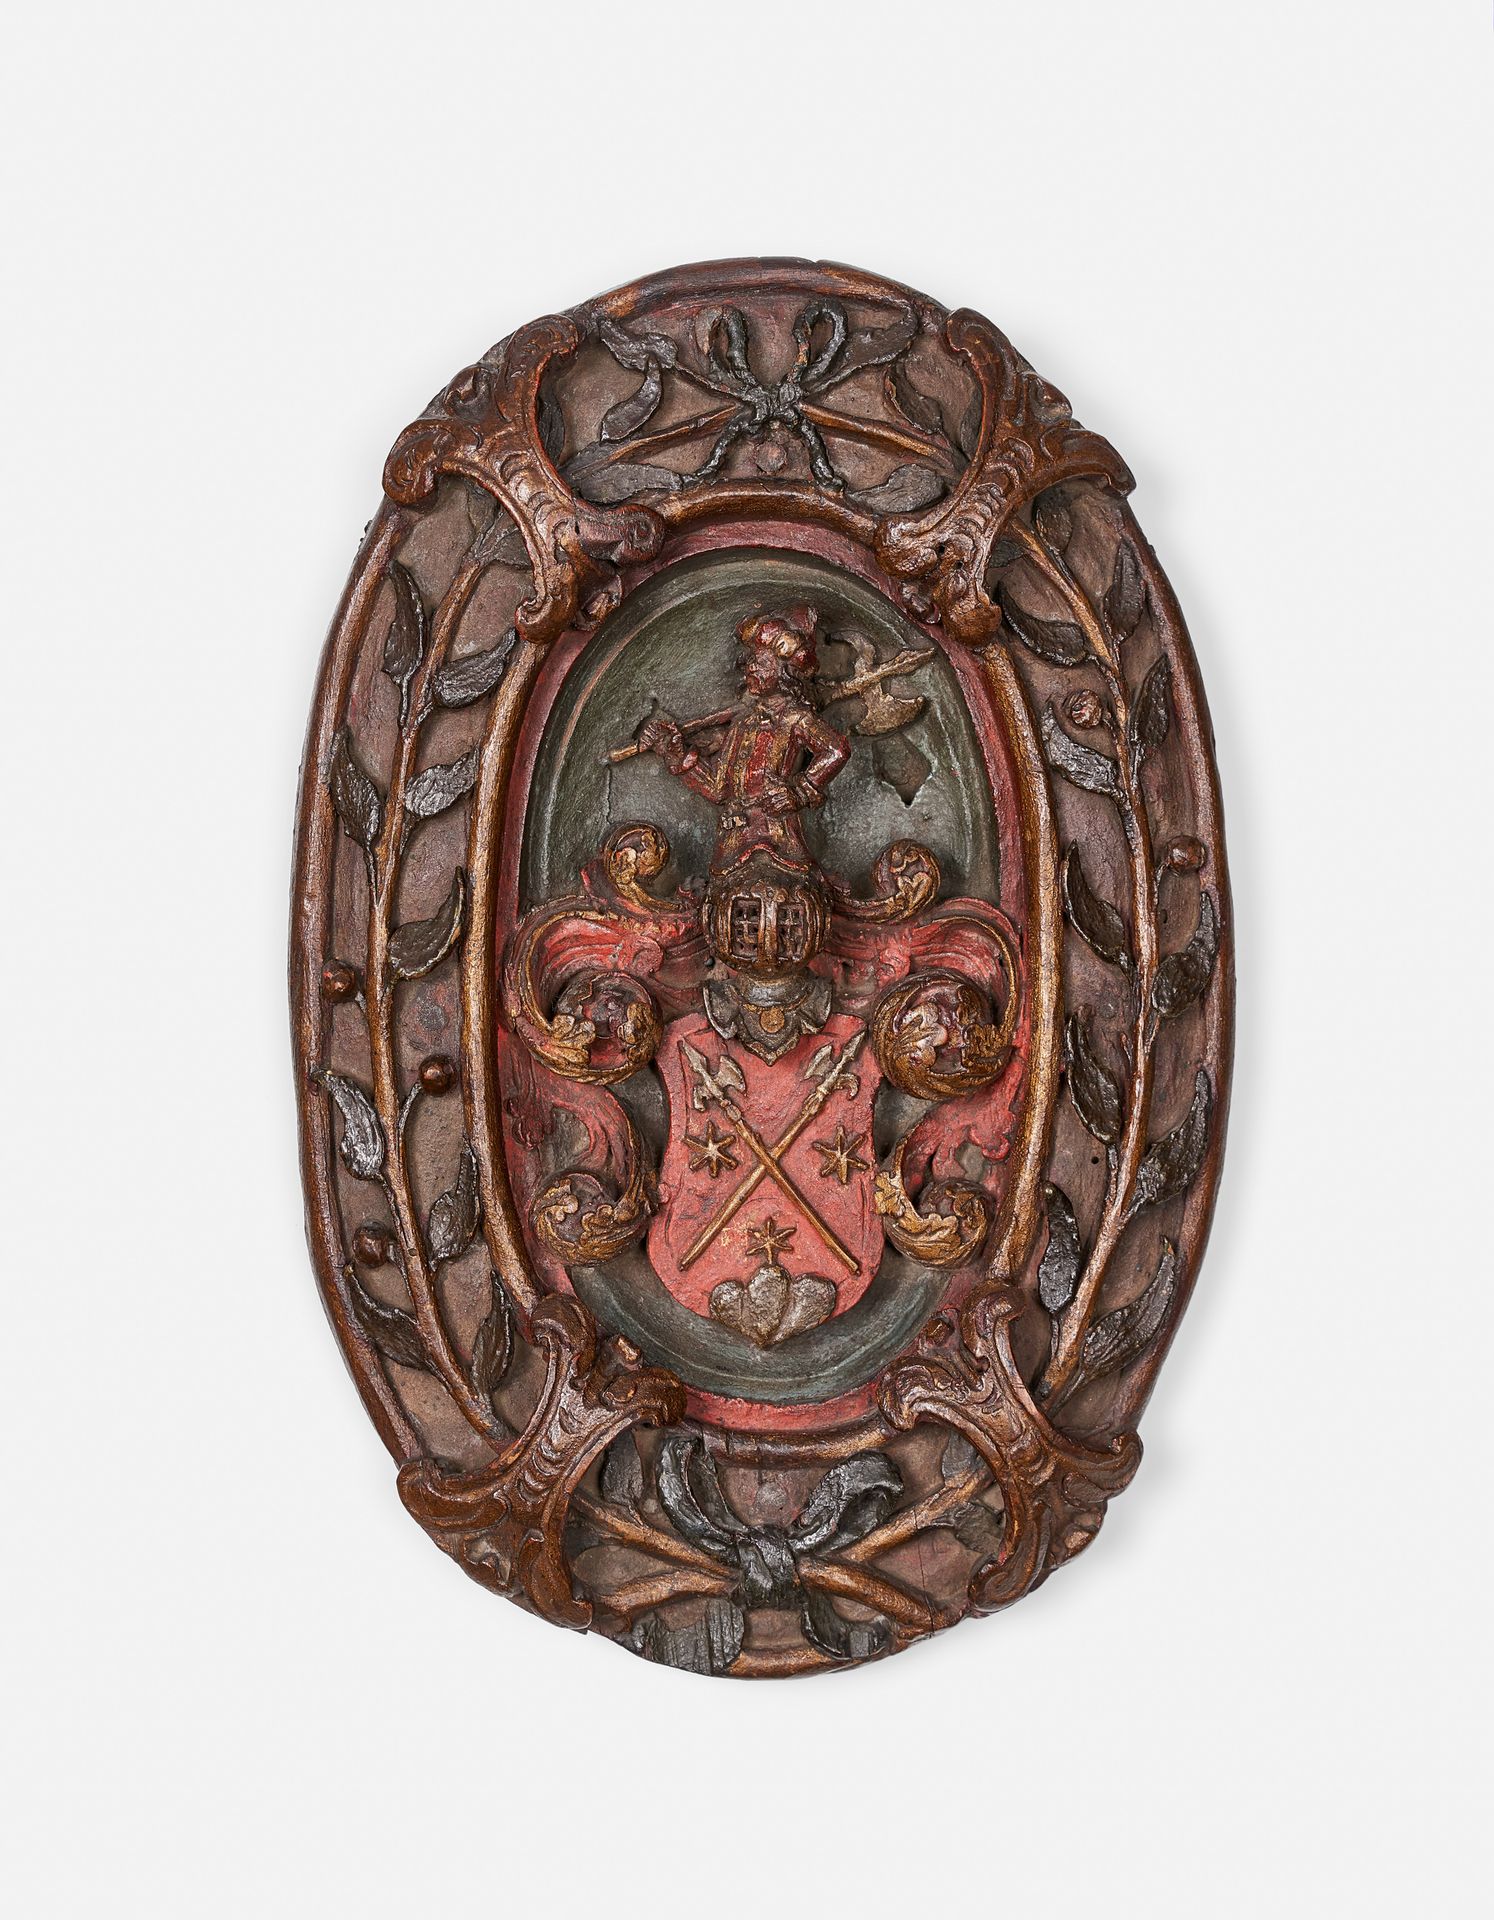 Null ESCUDO TALLADO

Finales del siglo XVI 

En madera esculpida en altorrelieve&hellip;